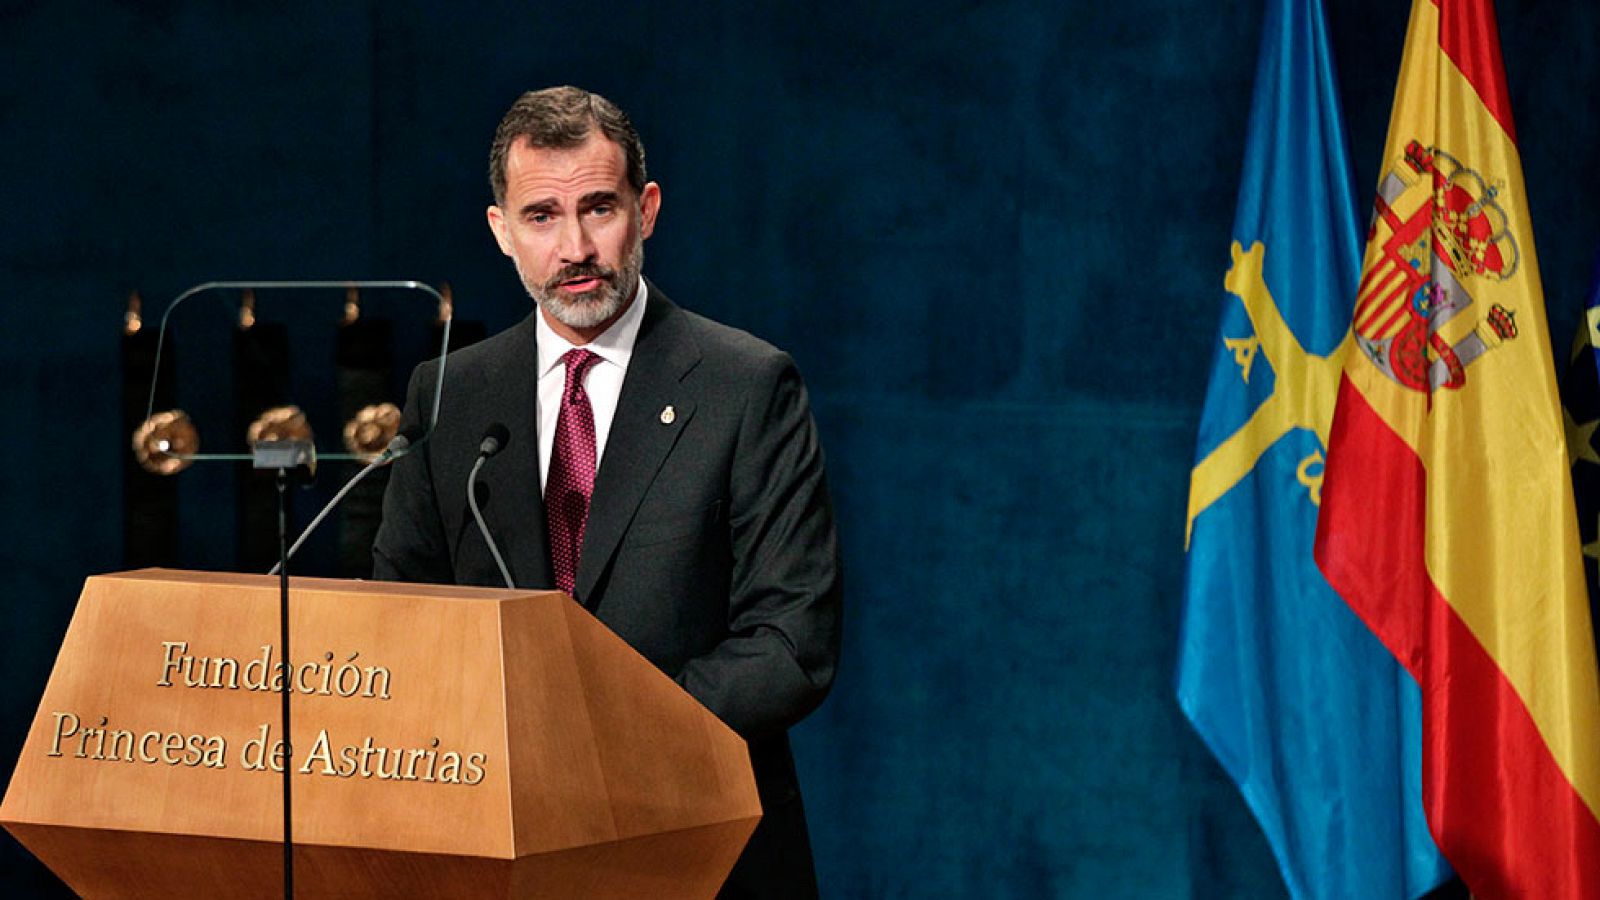 Premios Princesa de Asturias- Felipe VI reclama "una Espaa alejada del pesimismo"